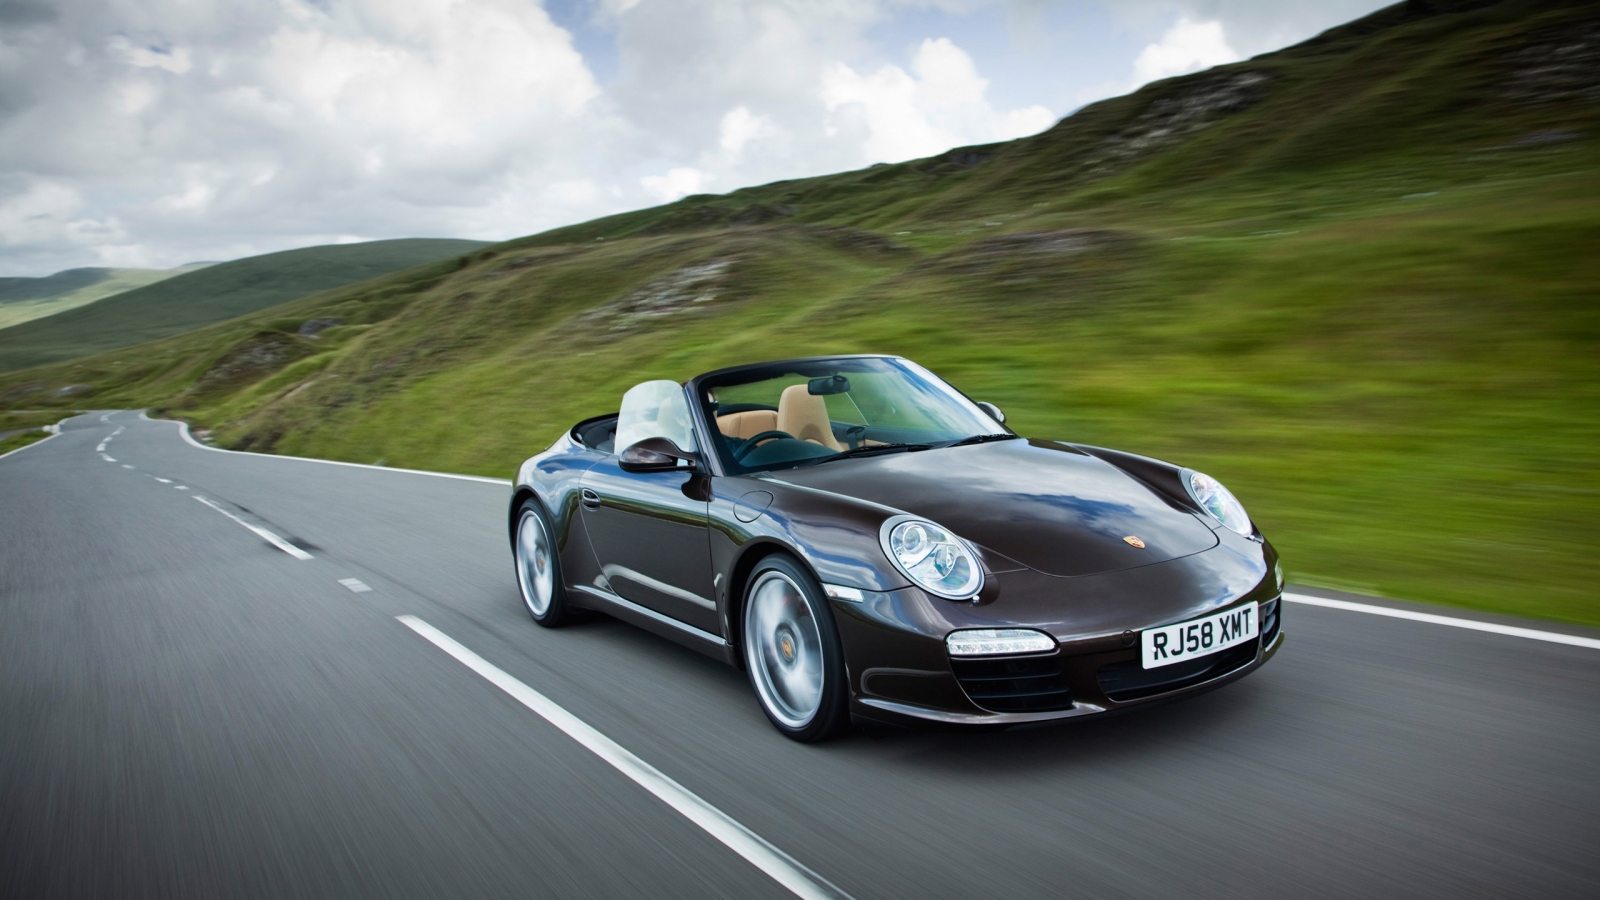 Beautifull 911 Porsche for 1600 x 900 HDTV resolution